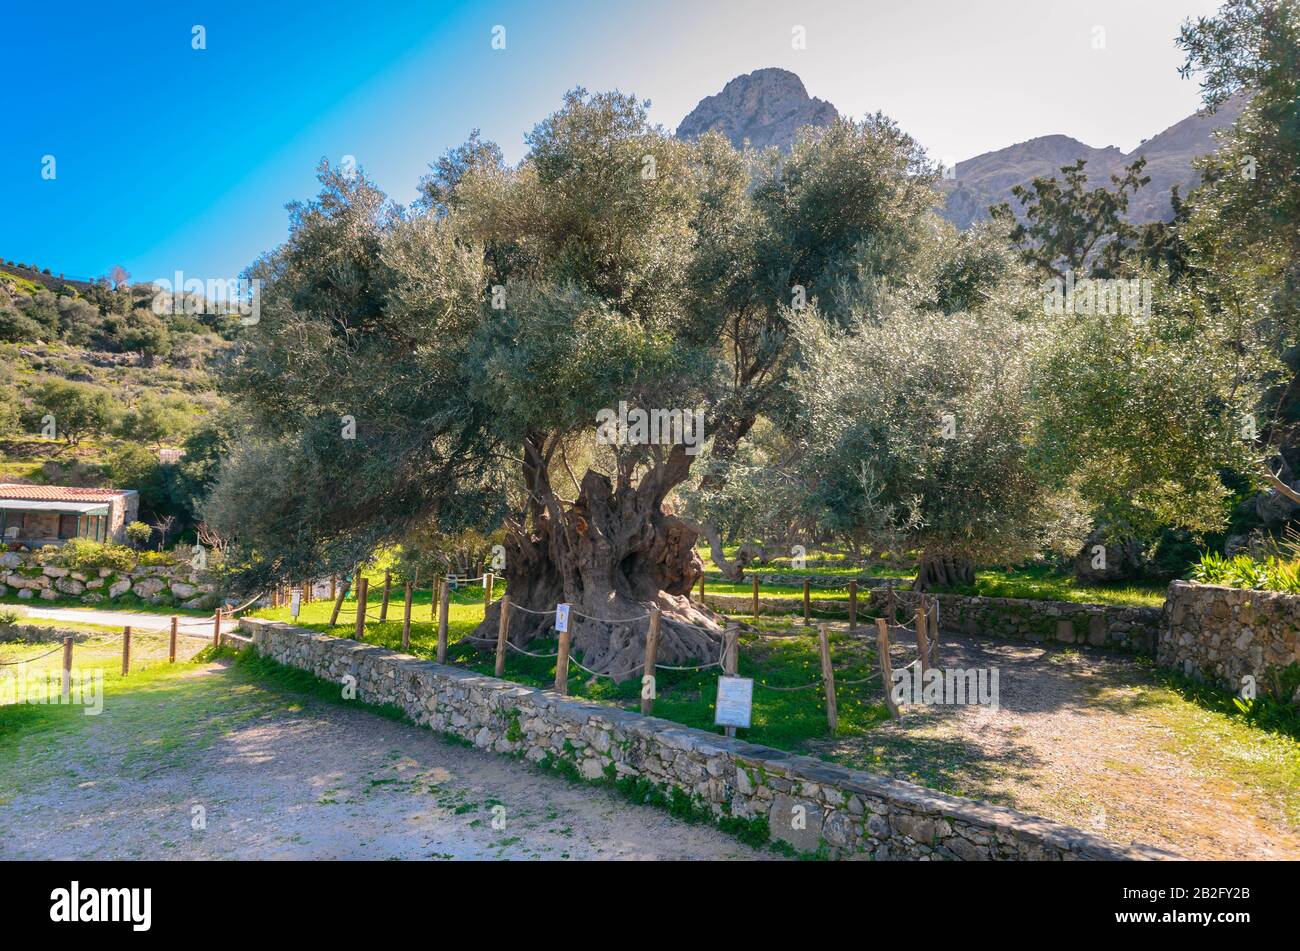 L'olivier monumental de Kavusi.C'est un monument naturel qui est considéré comme l'olivier le plus ancien au monde avec un âge de 3500 ans. Banque D'Images